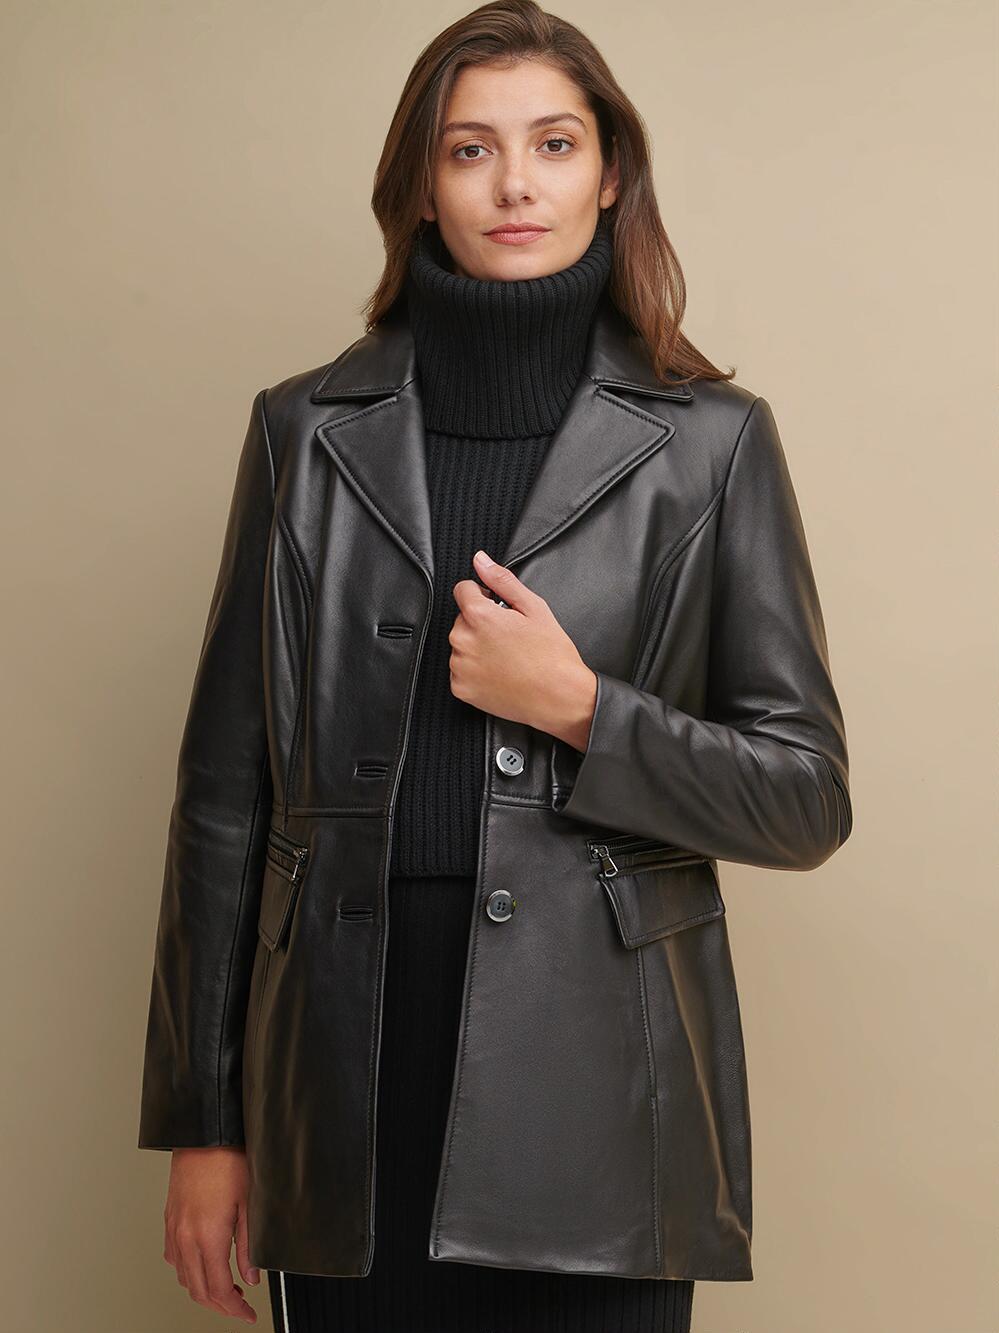 Long black leather jacket